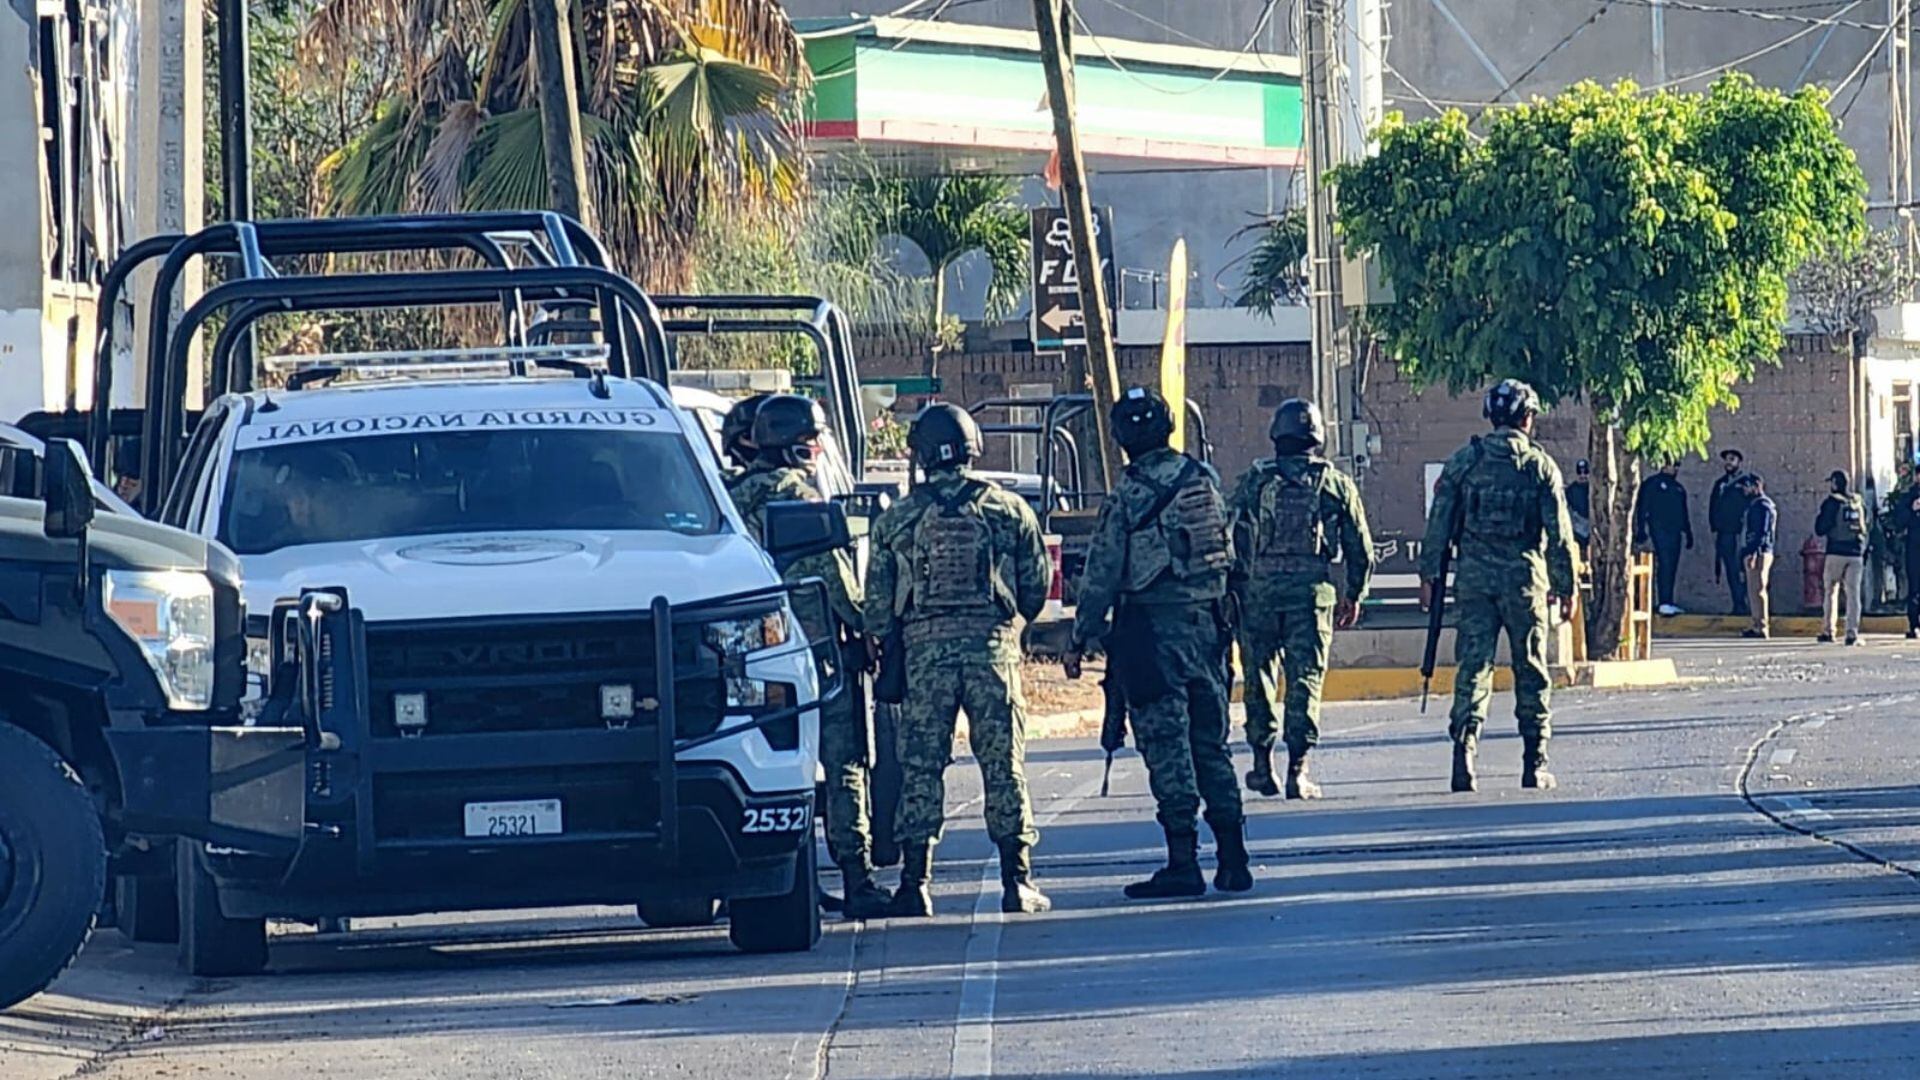 Elementos de la Guardia Nacional realizaban labores de seguridad en la capital de Sinaloa cuando ocurrió el ataque. (X/@reflectoresmx)